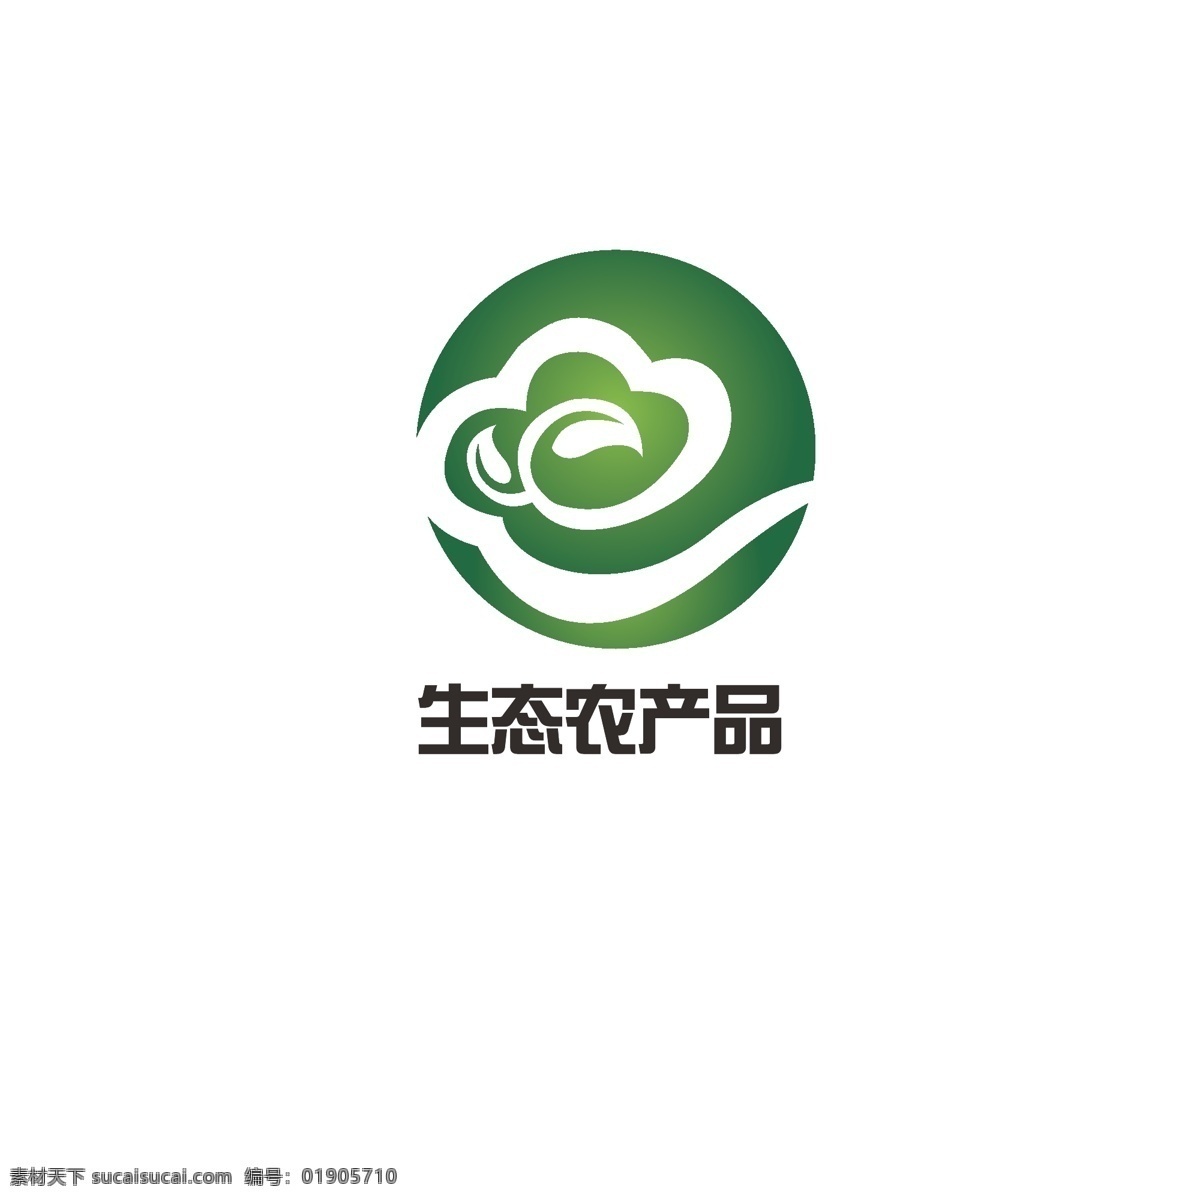 生态 农产品 logo 农业 绿色 祥云 简约 健康 如意